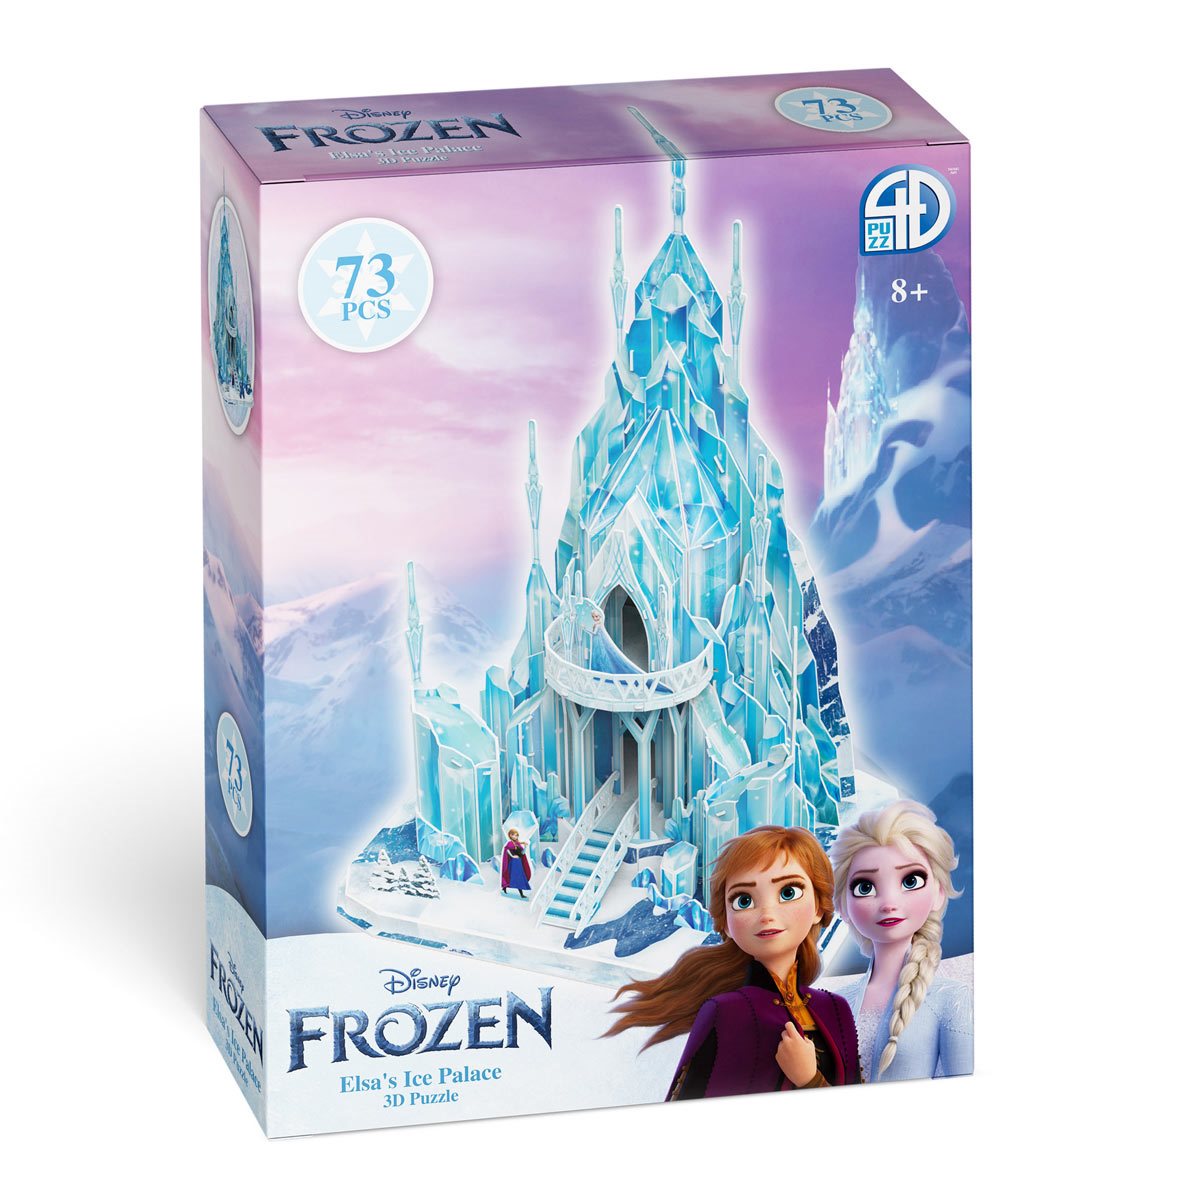 Beroemdheid dosis Sluit een verzekering af Disney Frozen Elsa's Ice Palace 3D Model Puzzle Kit